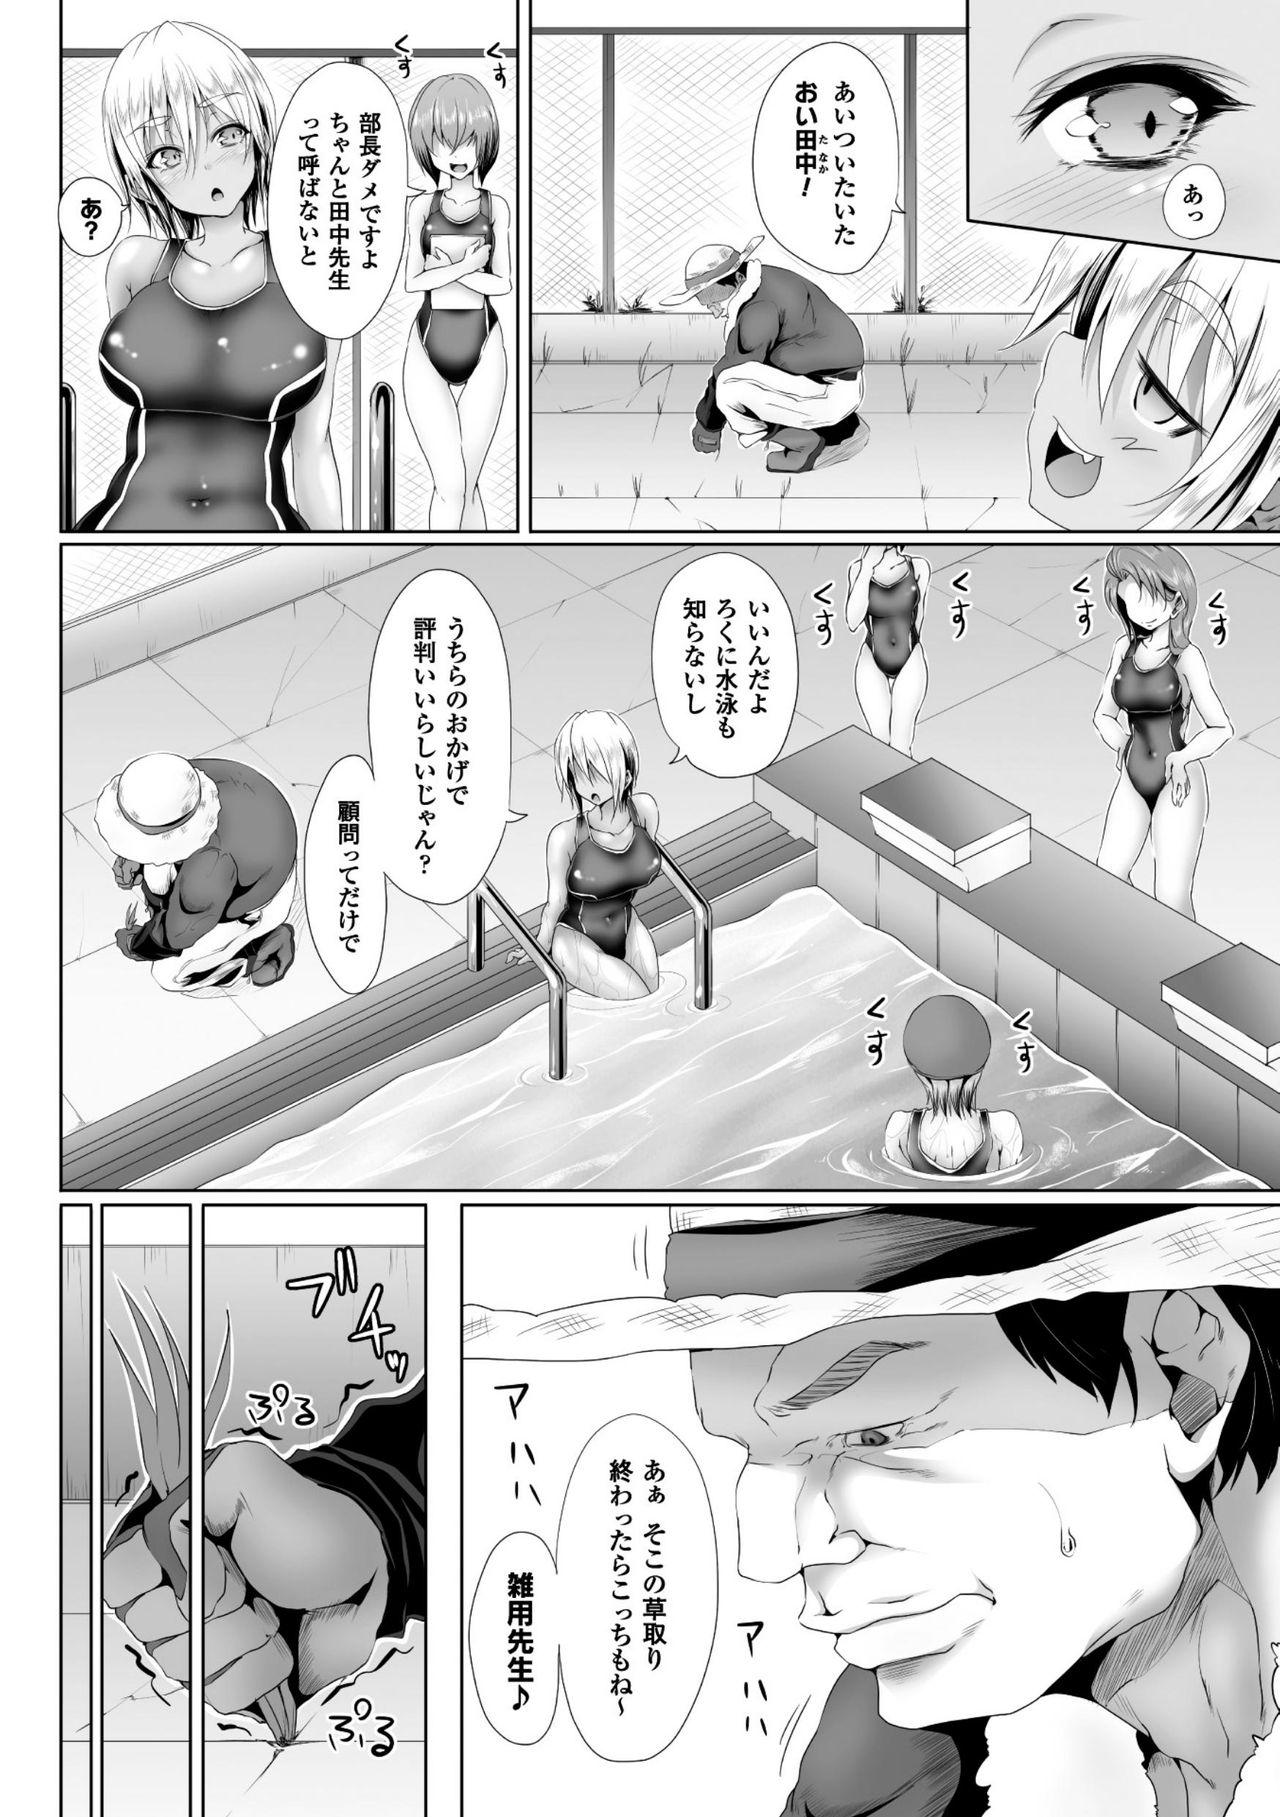 Seigi no Heroine Kangoku File Vol. 8 38